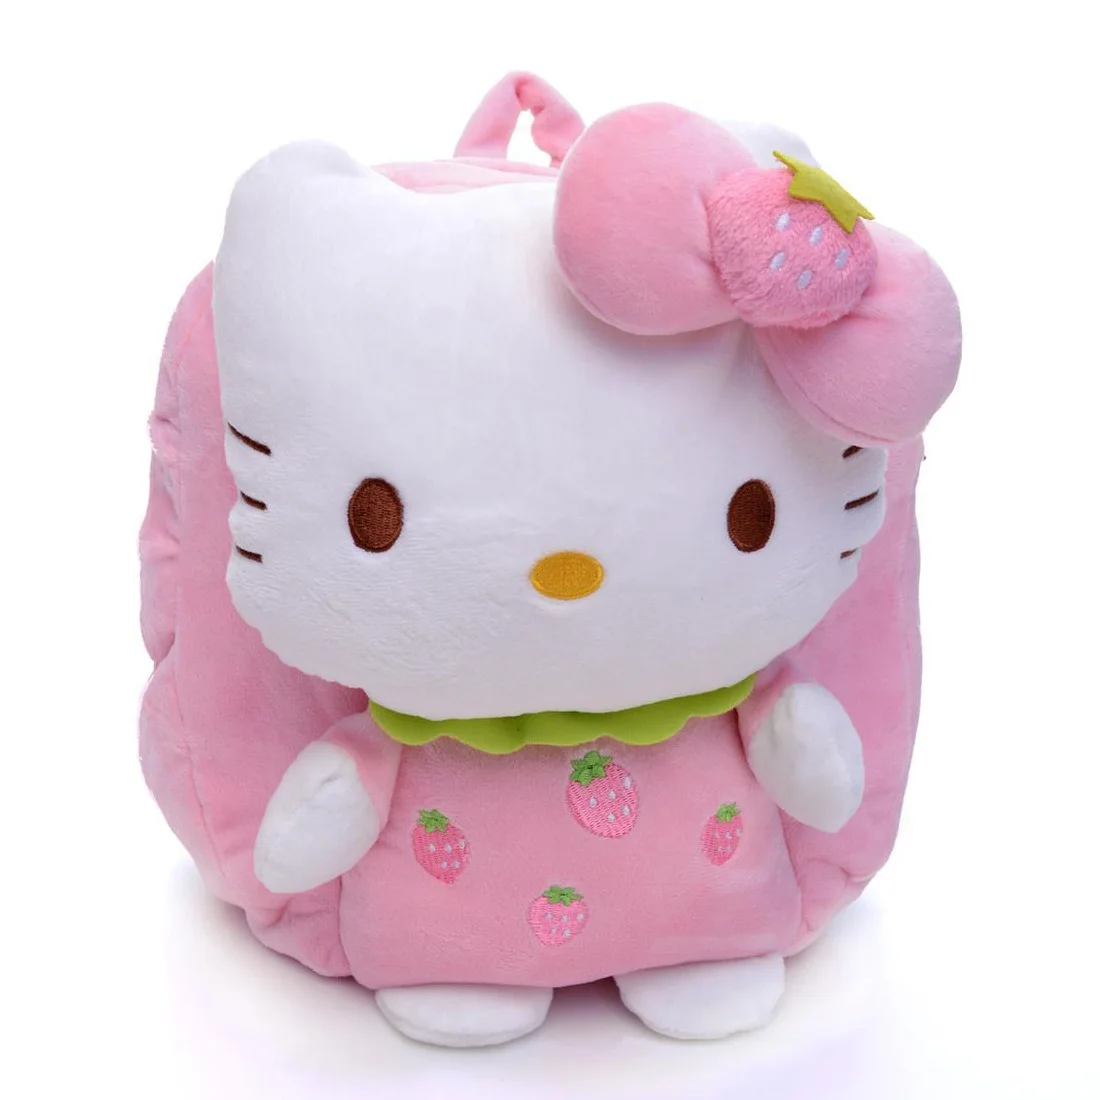 HELLO KITTY kawaii backpack child kindergarten children's schoolbag plush backpack hello kitty bag backpack for baby 30*28cm - Цвет: Розовый